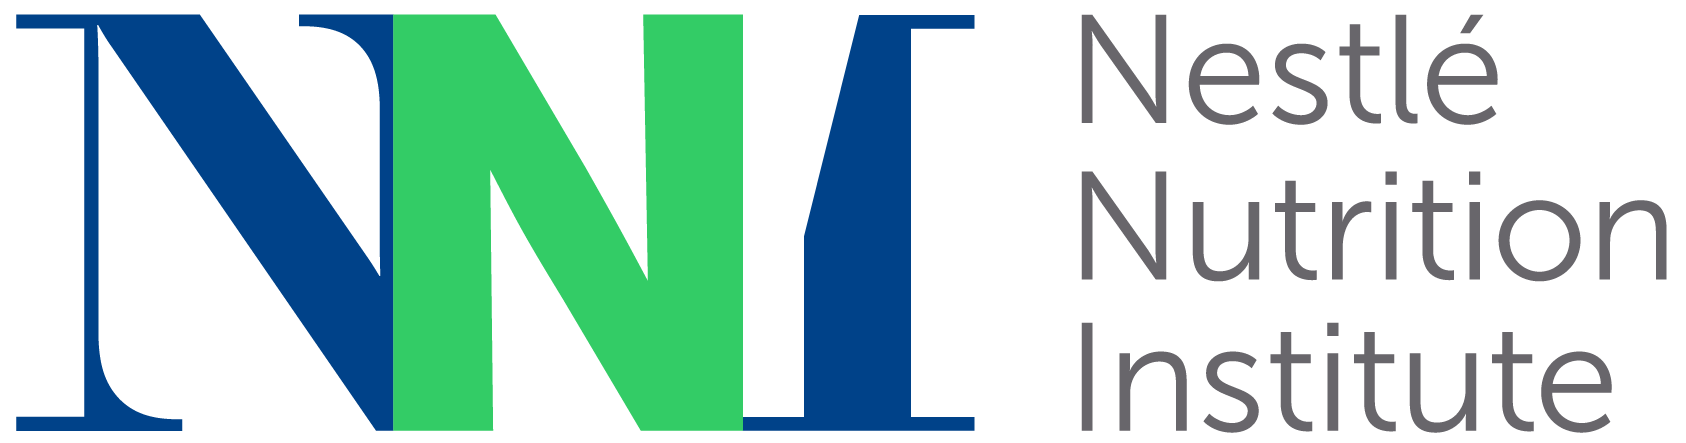 Nestle Nutrition Institute